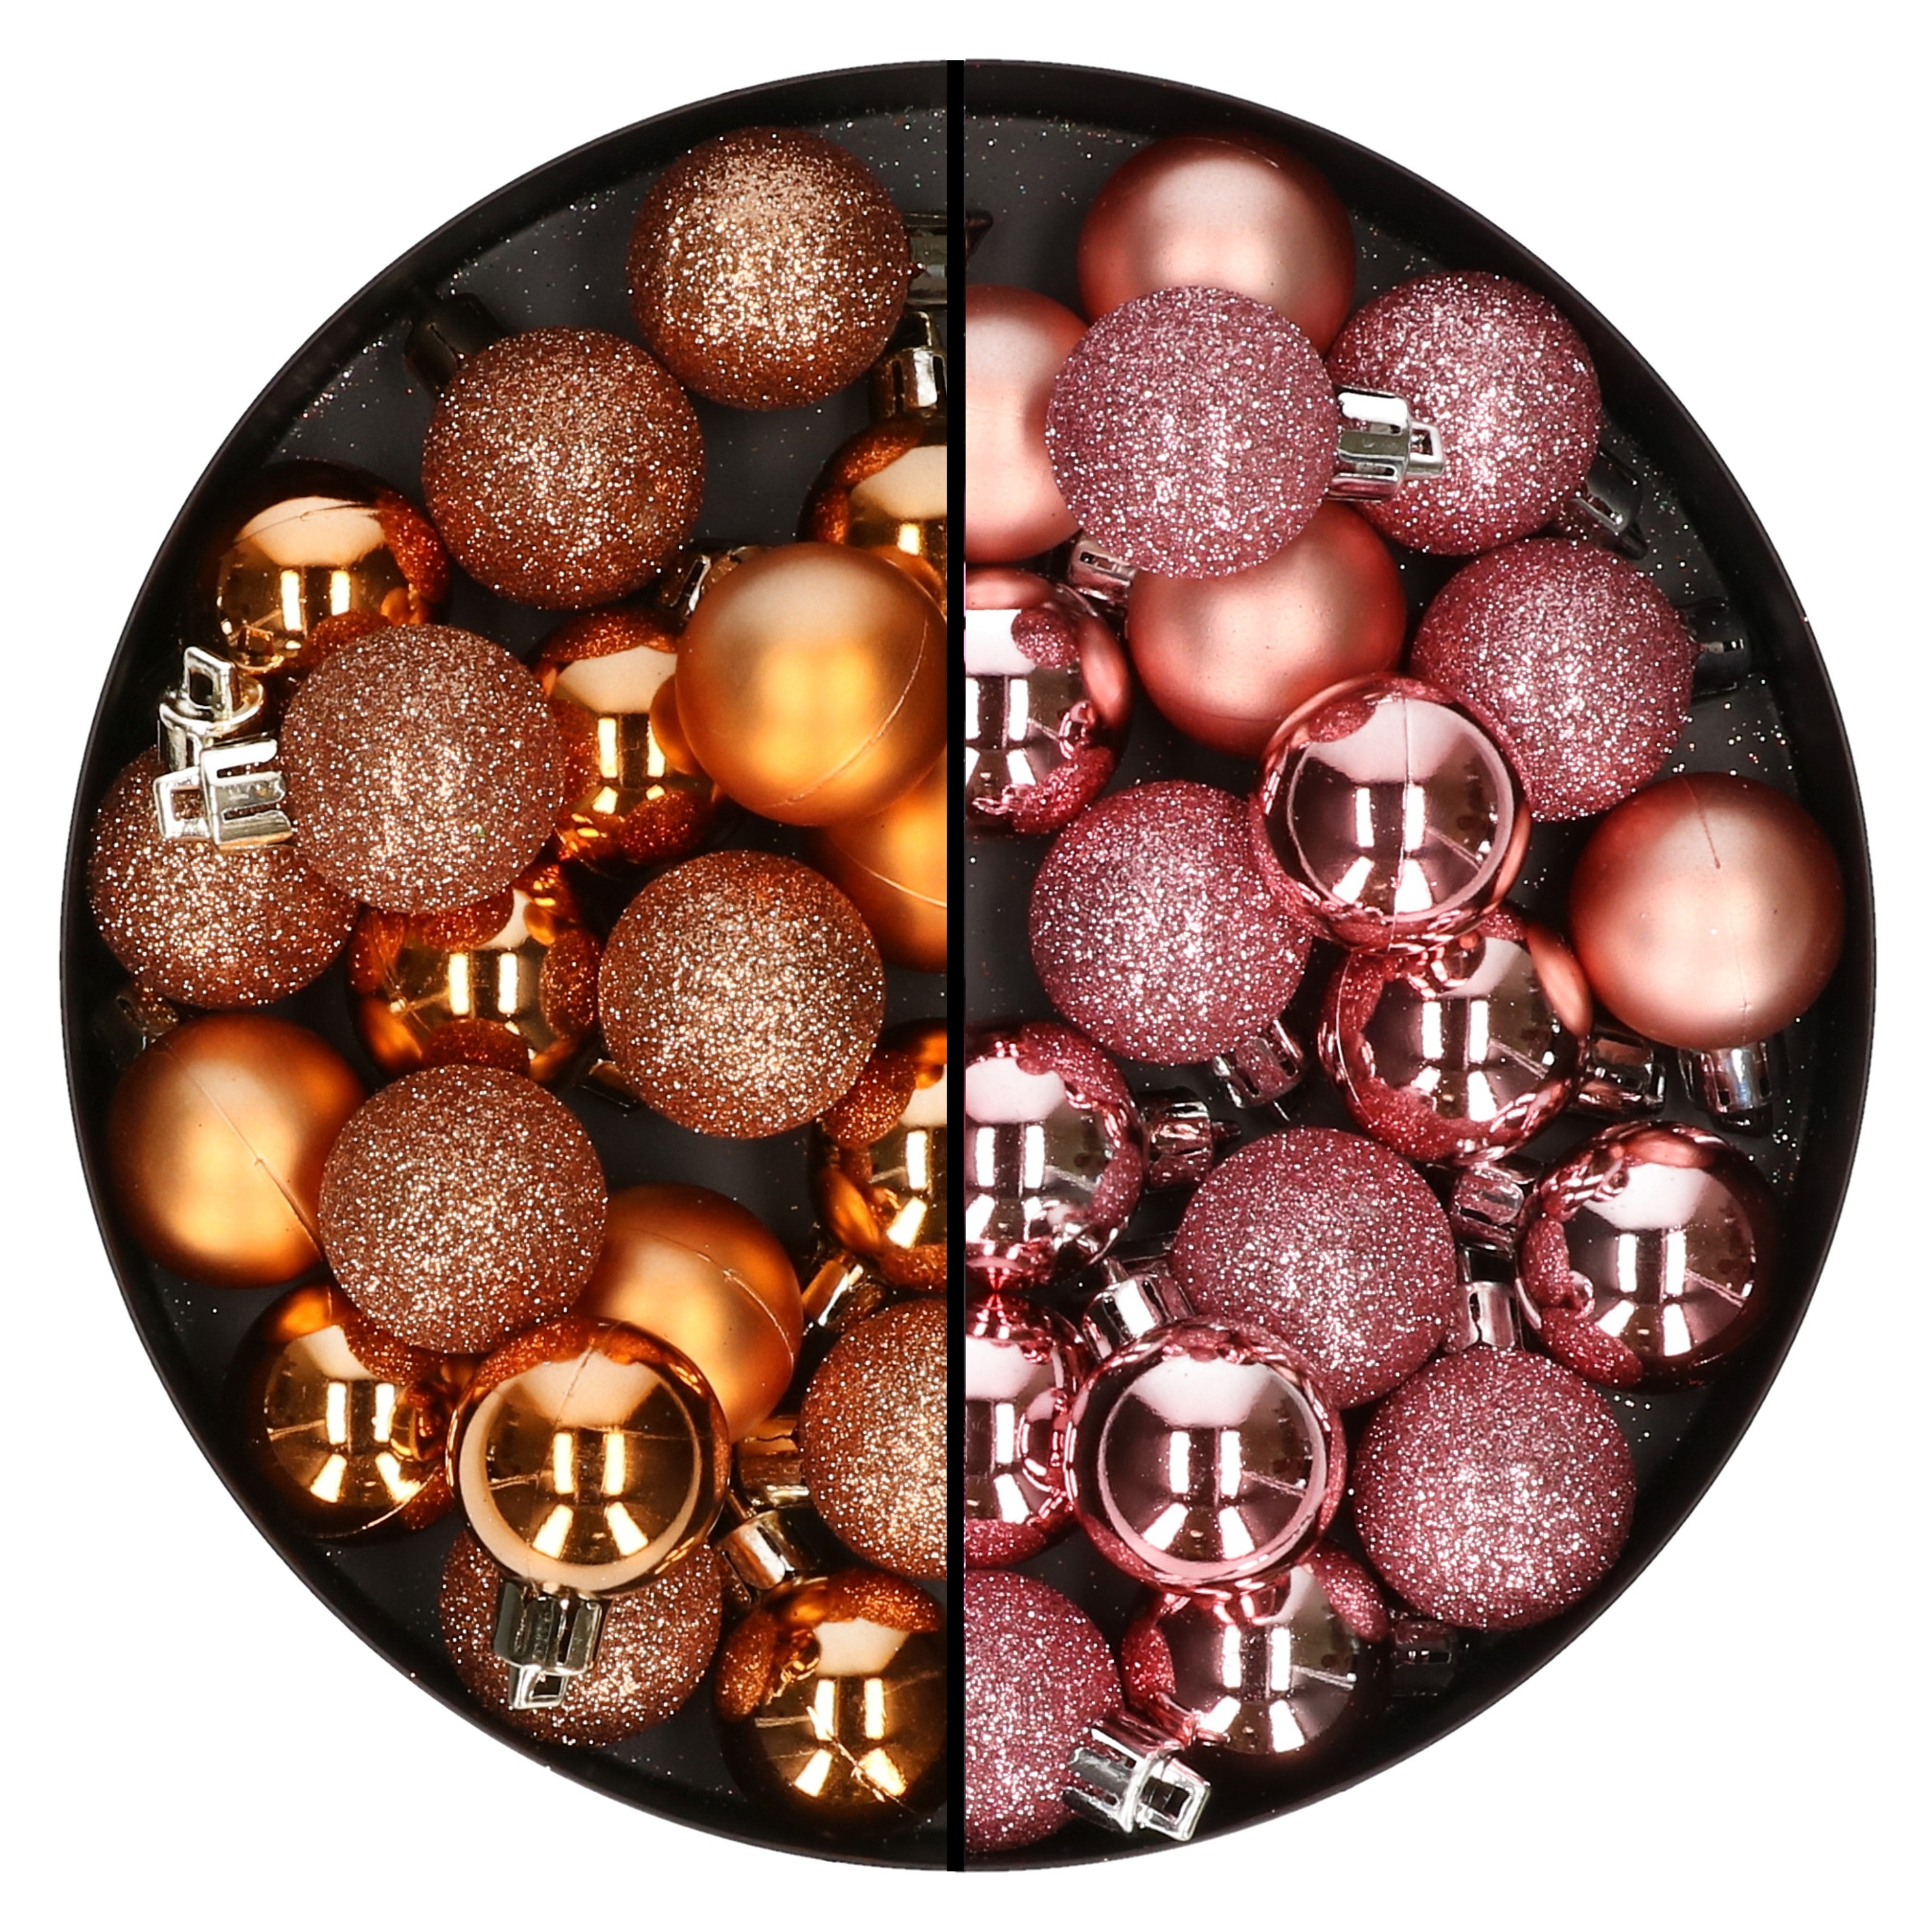 40x stuks kleine kunststof kerstballen koper en roze 3 cm